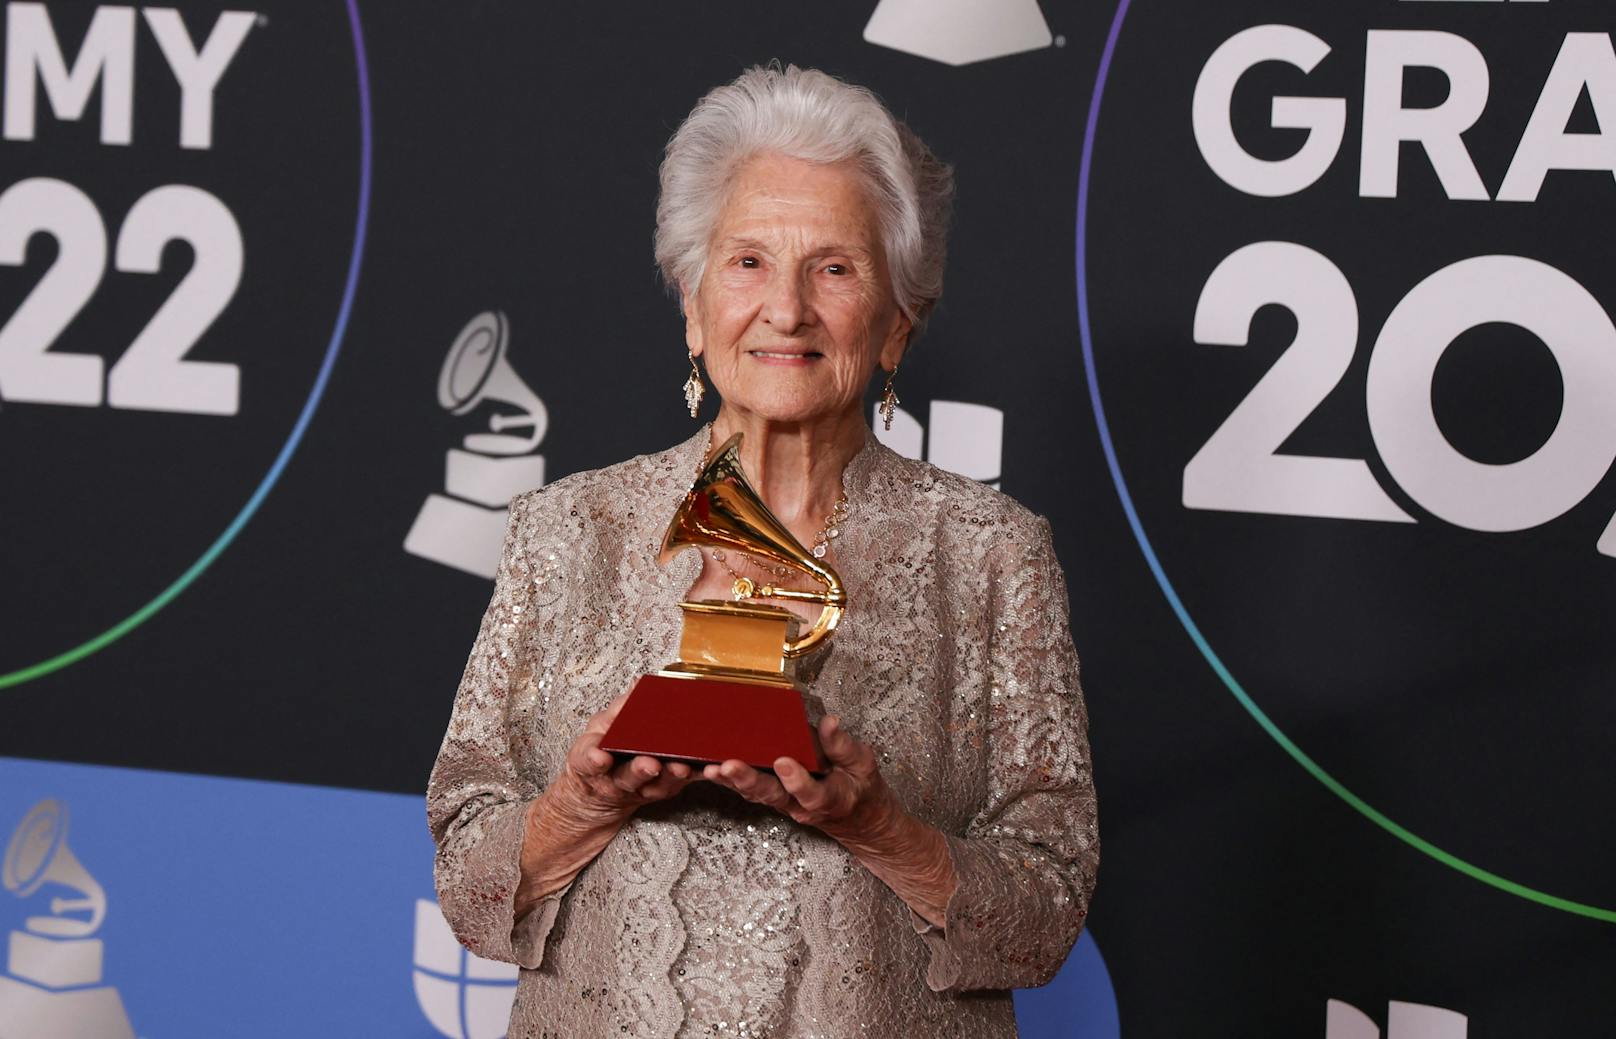 95-jährige Oma als "beste Newcomerin" bei Grammys gefeiert